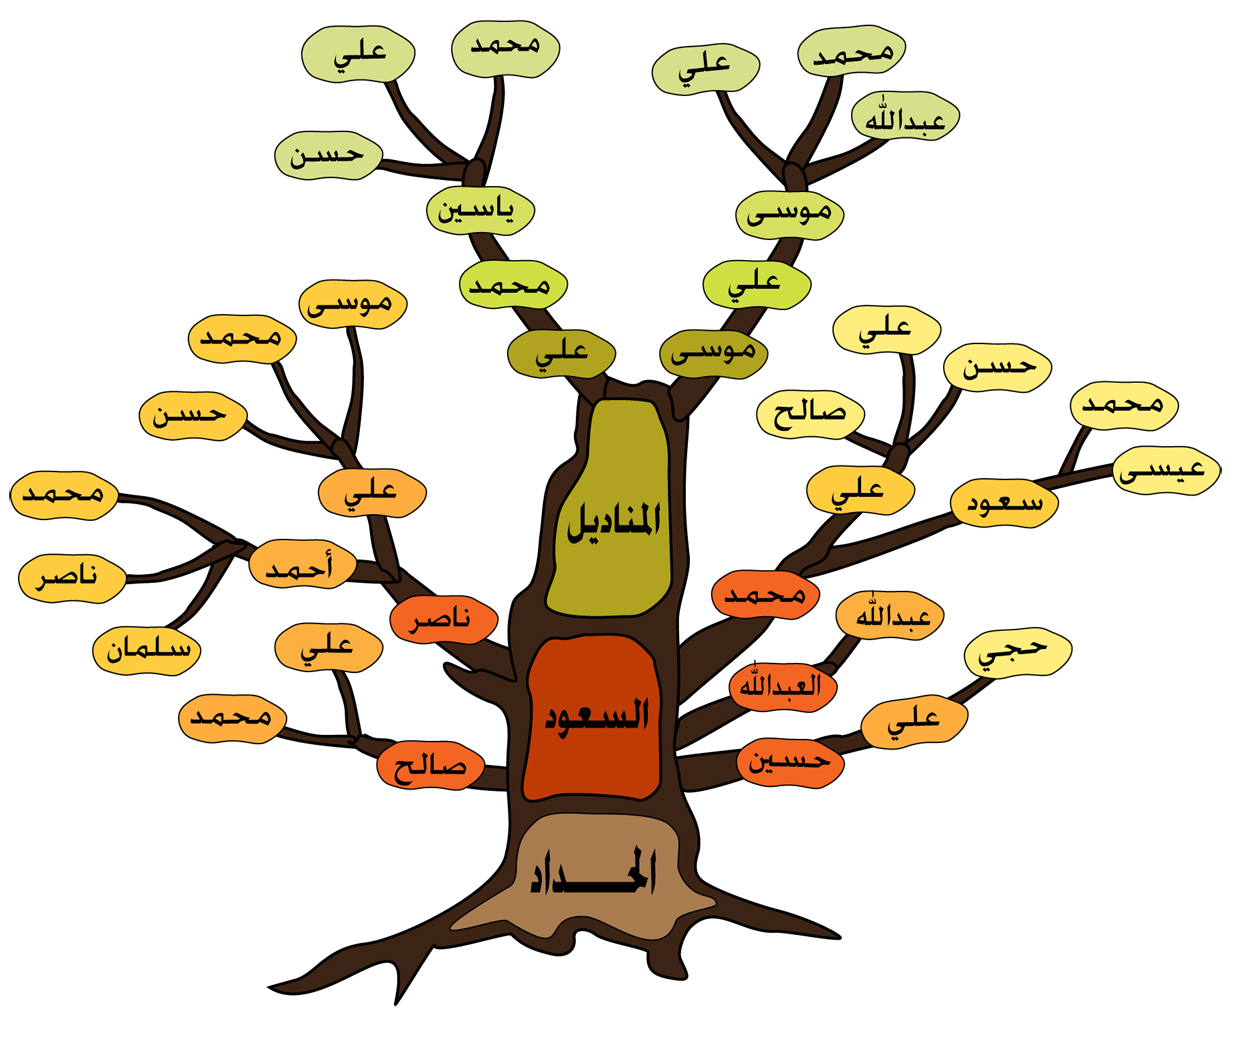 طريقة رسم شجرة العائلة كيفية رسم شجرة العائلة صور حزينه